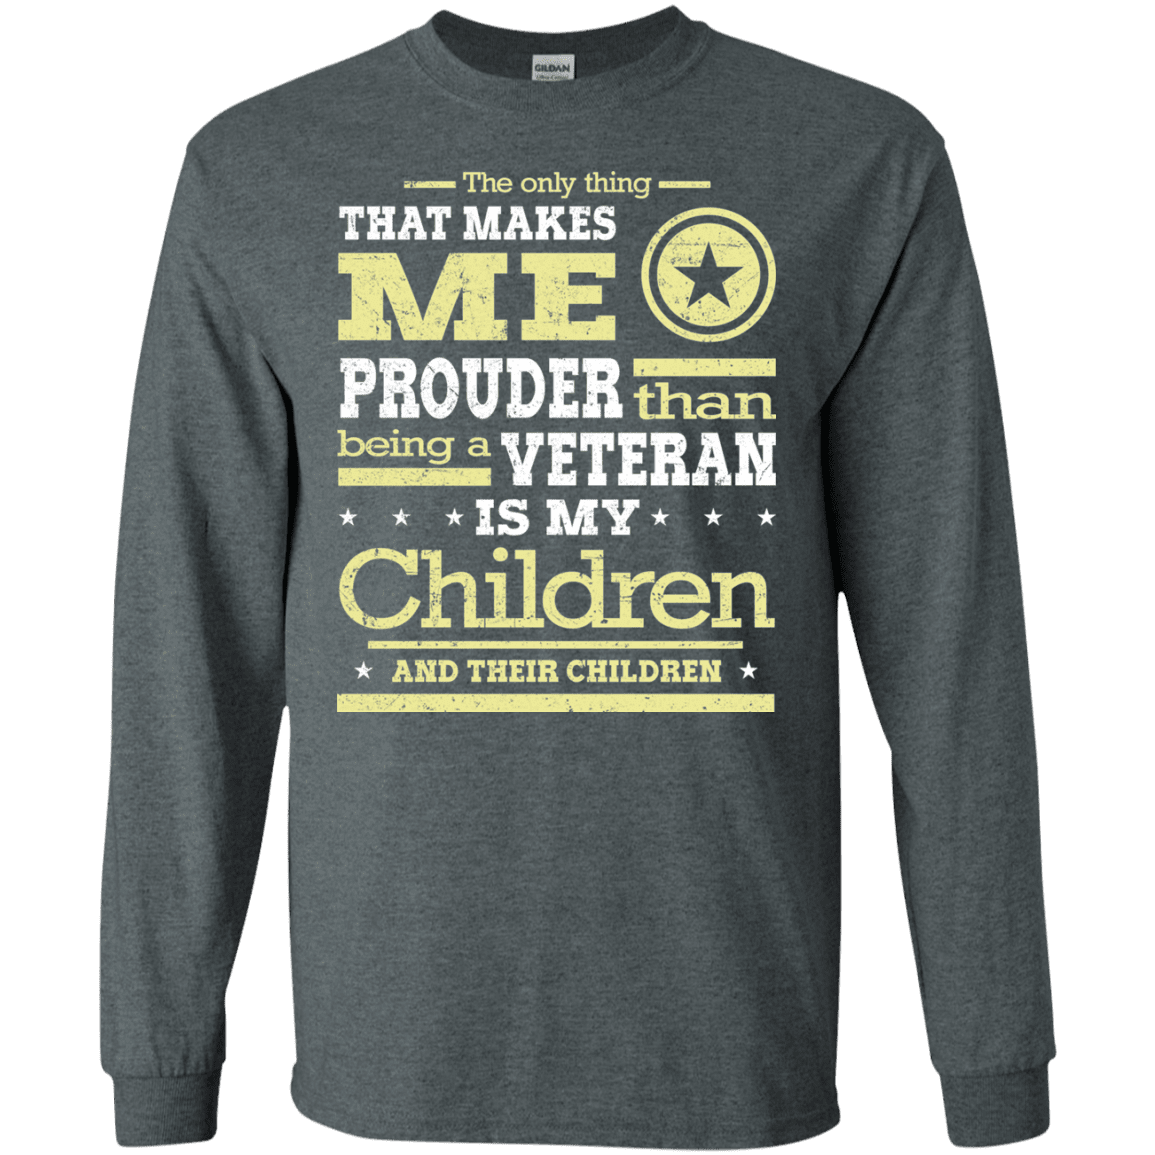 Military T-Shirt "Proud Children's Vetereran Mom" Front-TShirt-General-Veterans Nation